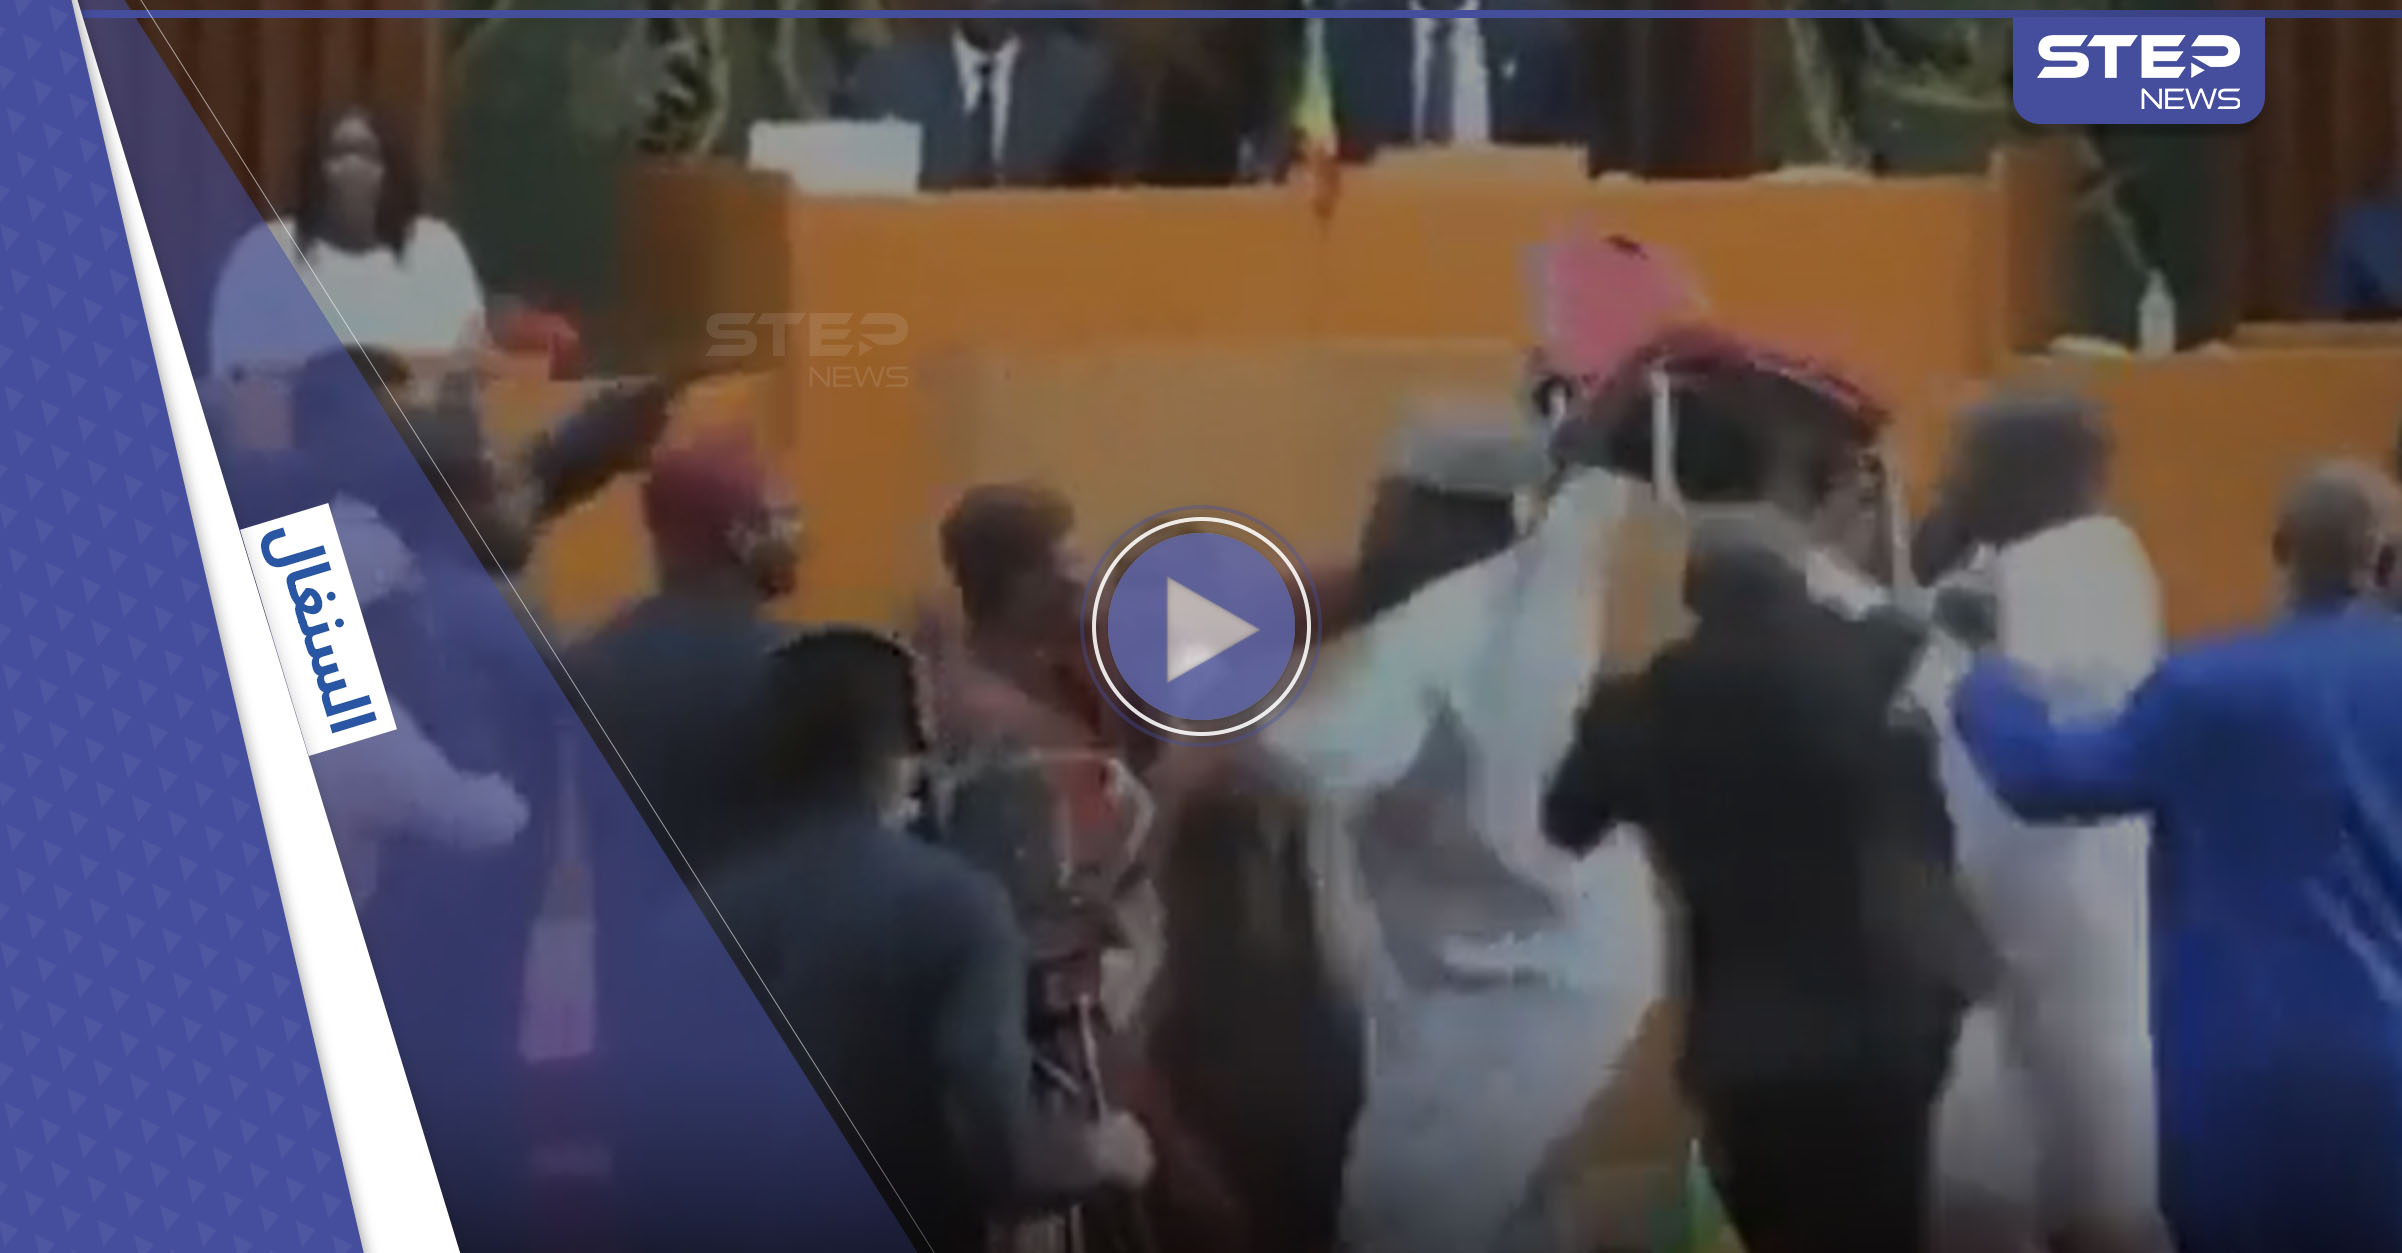 تحت قبة البرلمان السنغالي.. معركة بالكراسي نائب يصفع زميلته (فيديو)